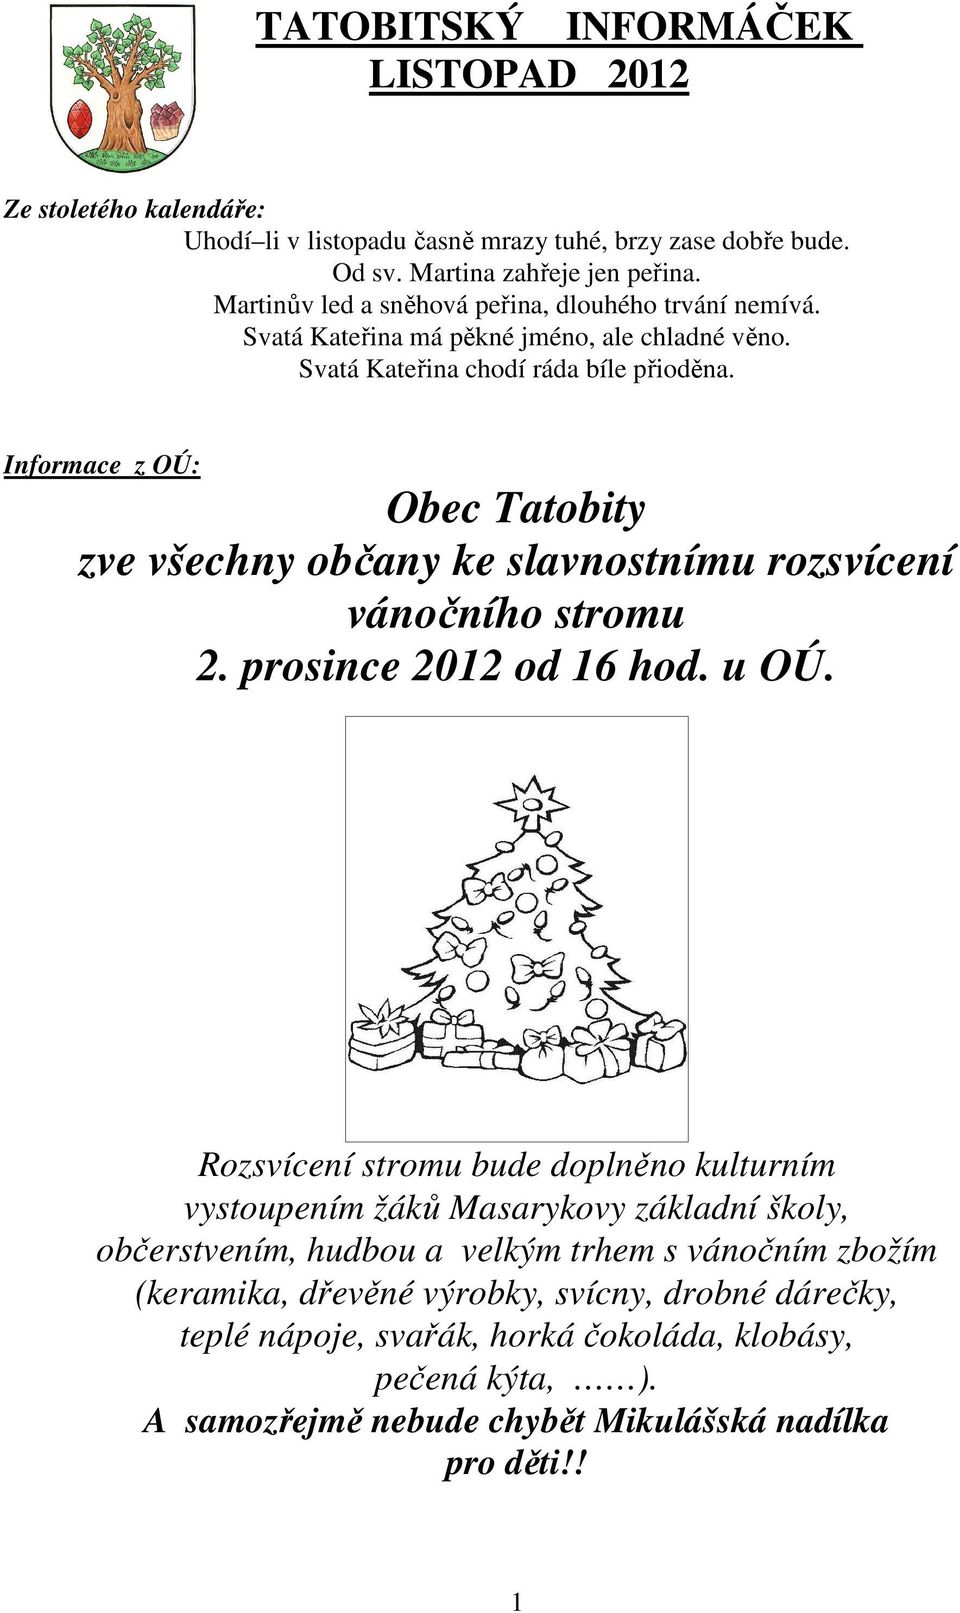 Informace z OÚ: Obec Tatobity zve všechny občany ke slavnostnímu rozsvícení vánočního stromu 2. prosince 2012 od 16 hod. u OÚ.